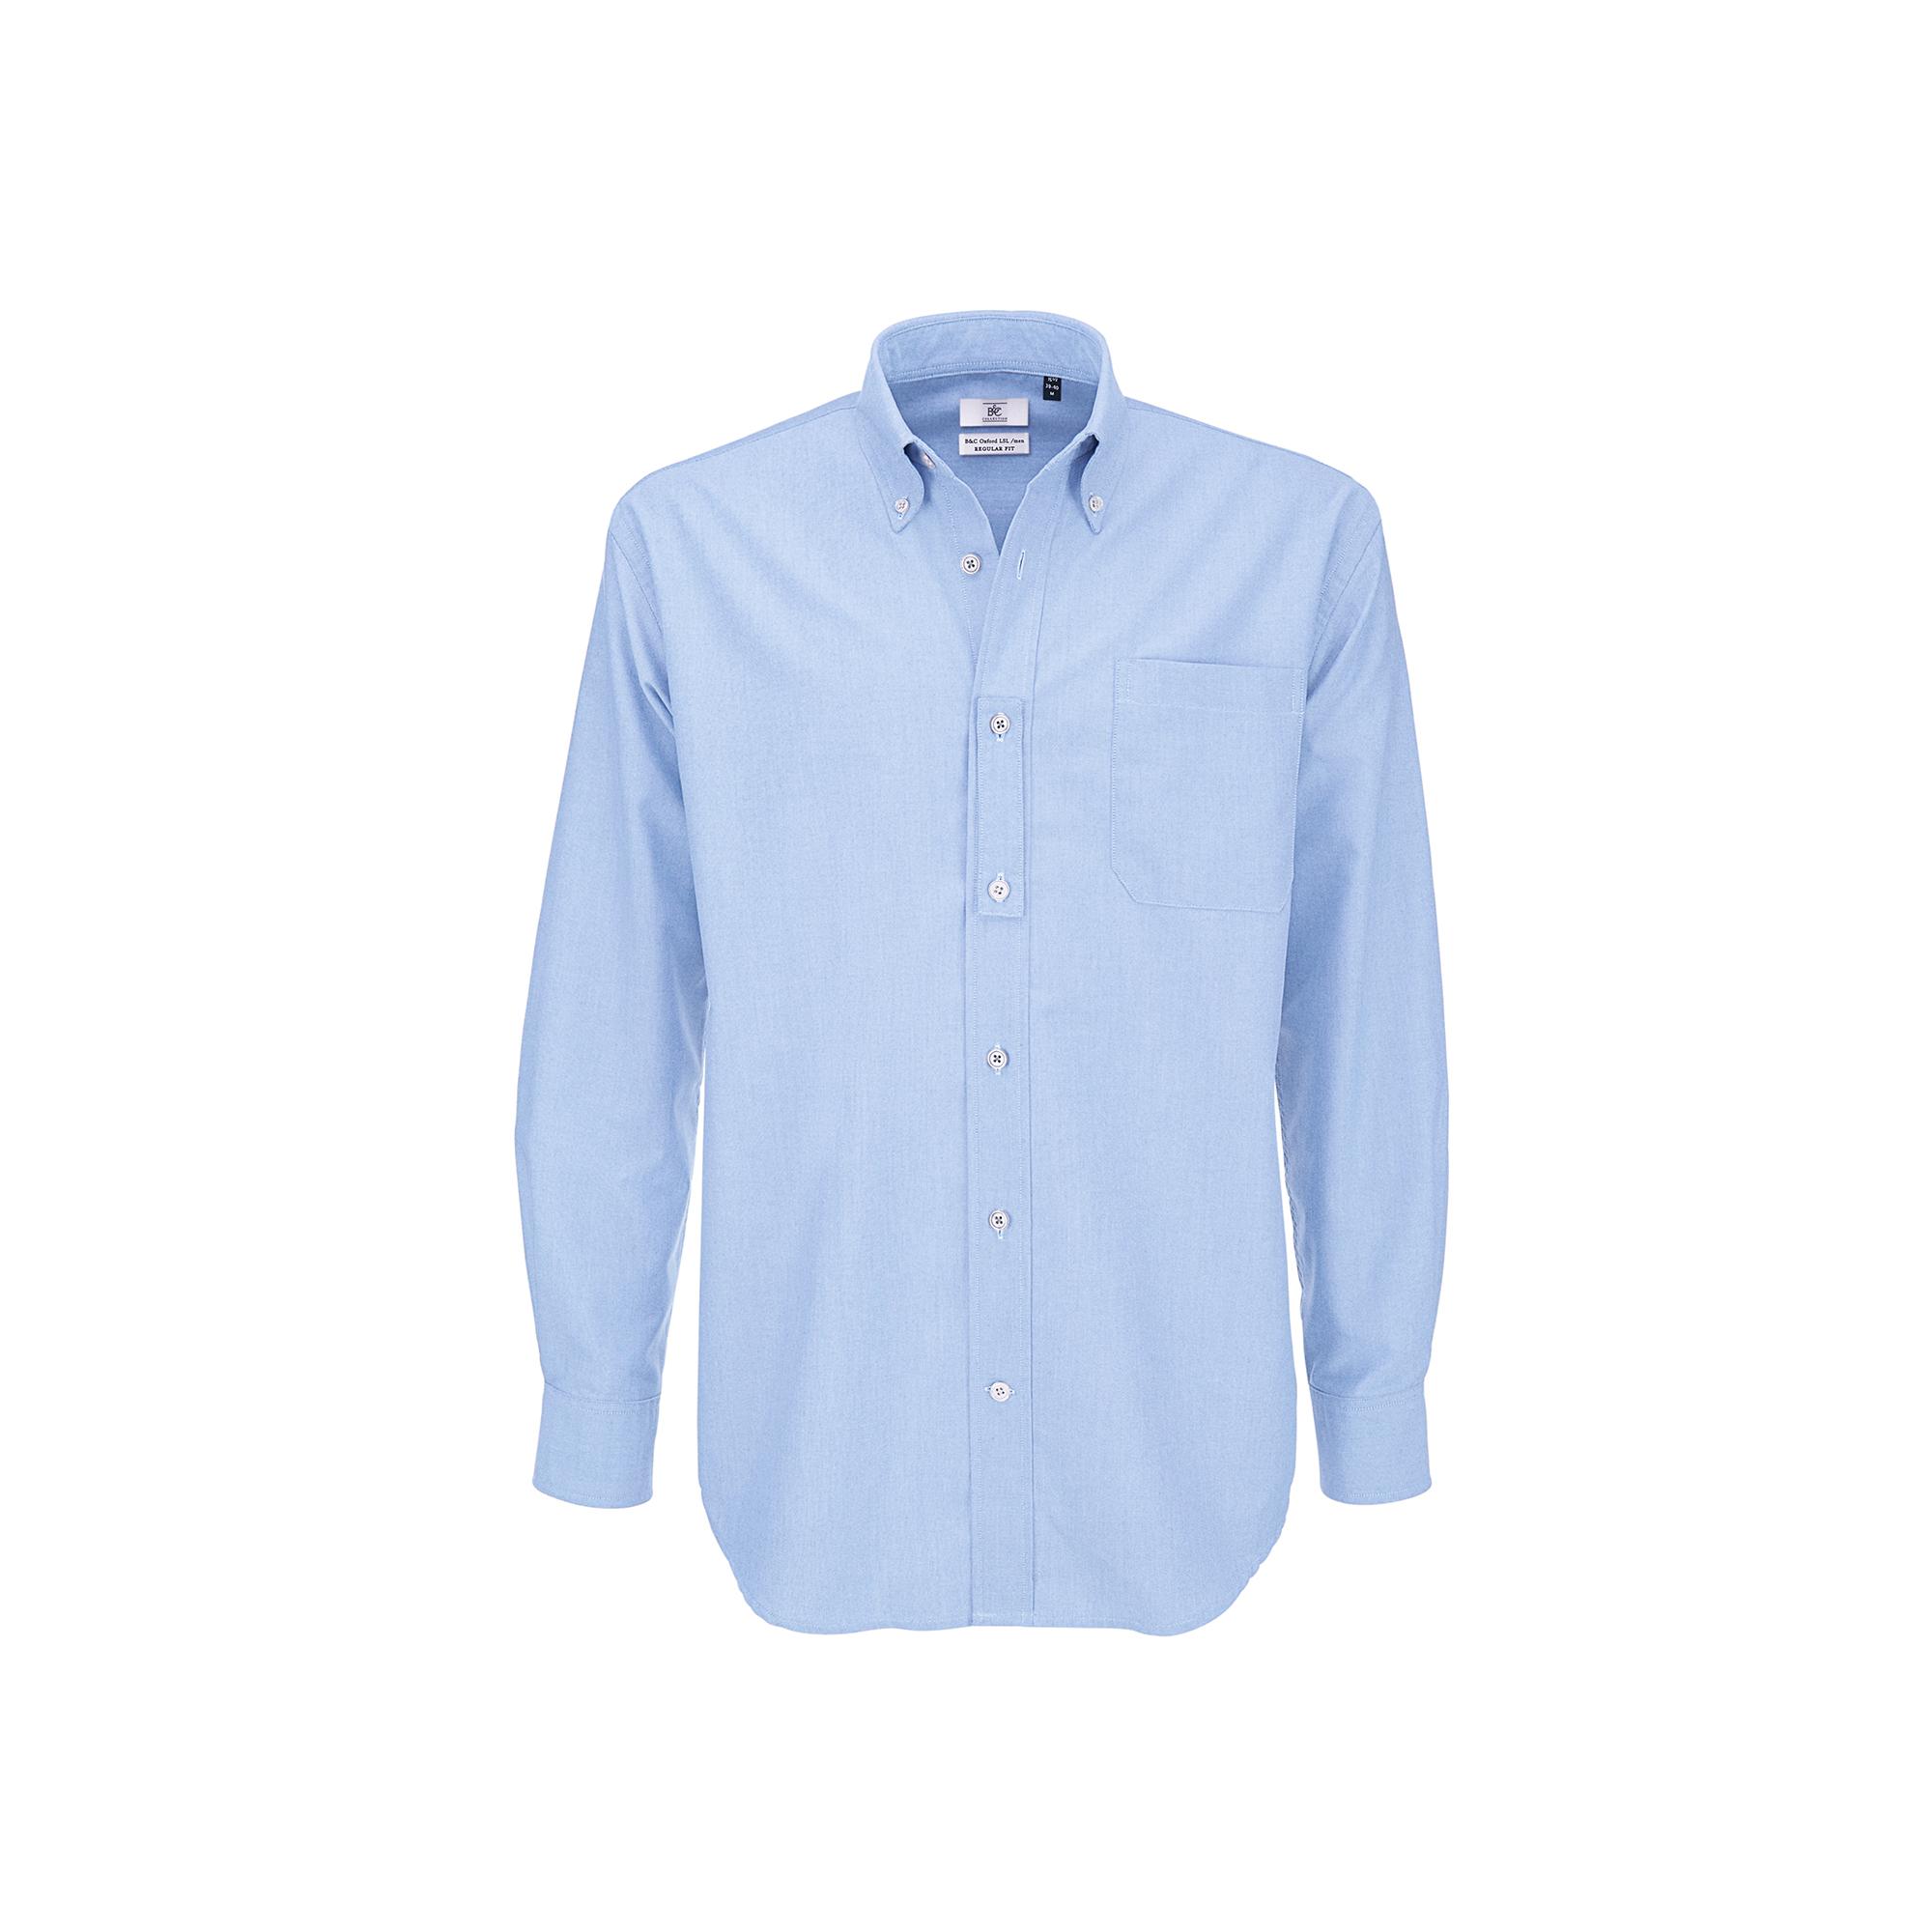 Рубашка мужская с длинным рукавом Oxford LSL/men, цвет голубой, фото 1